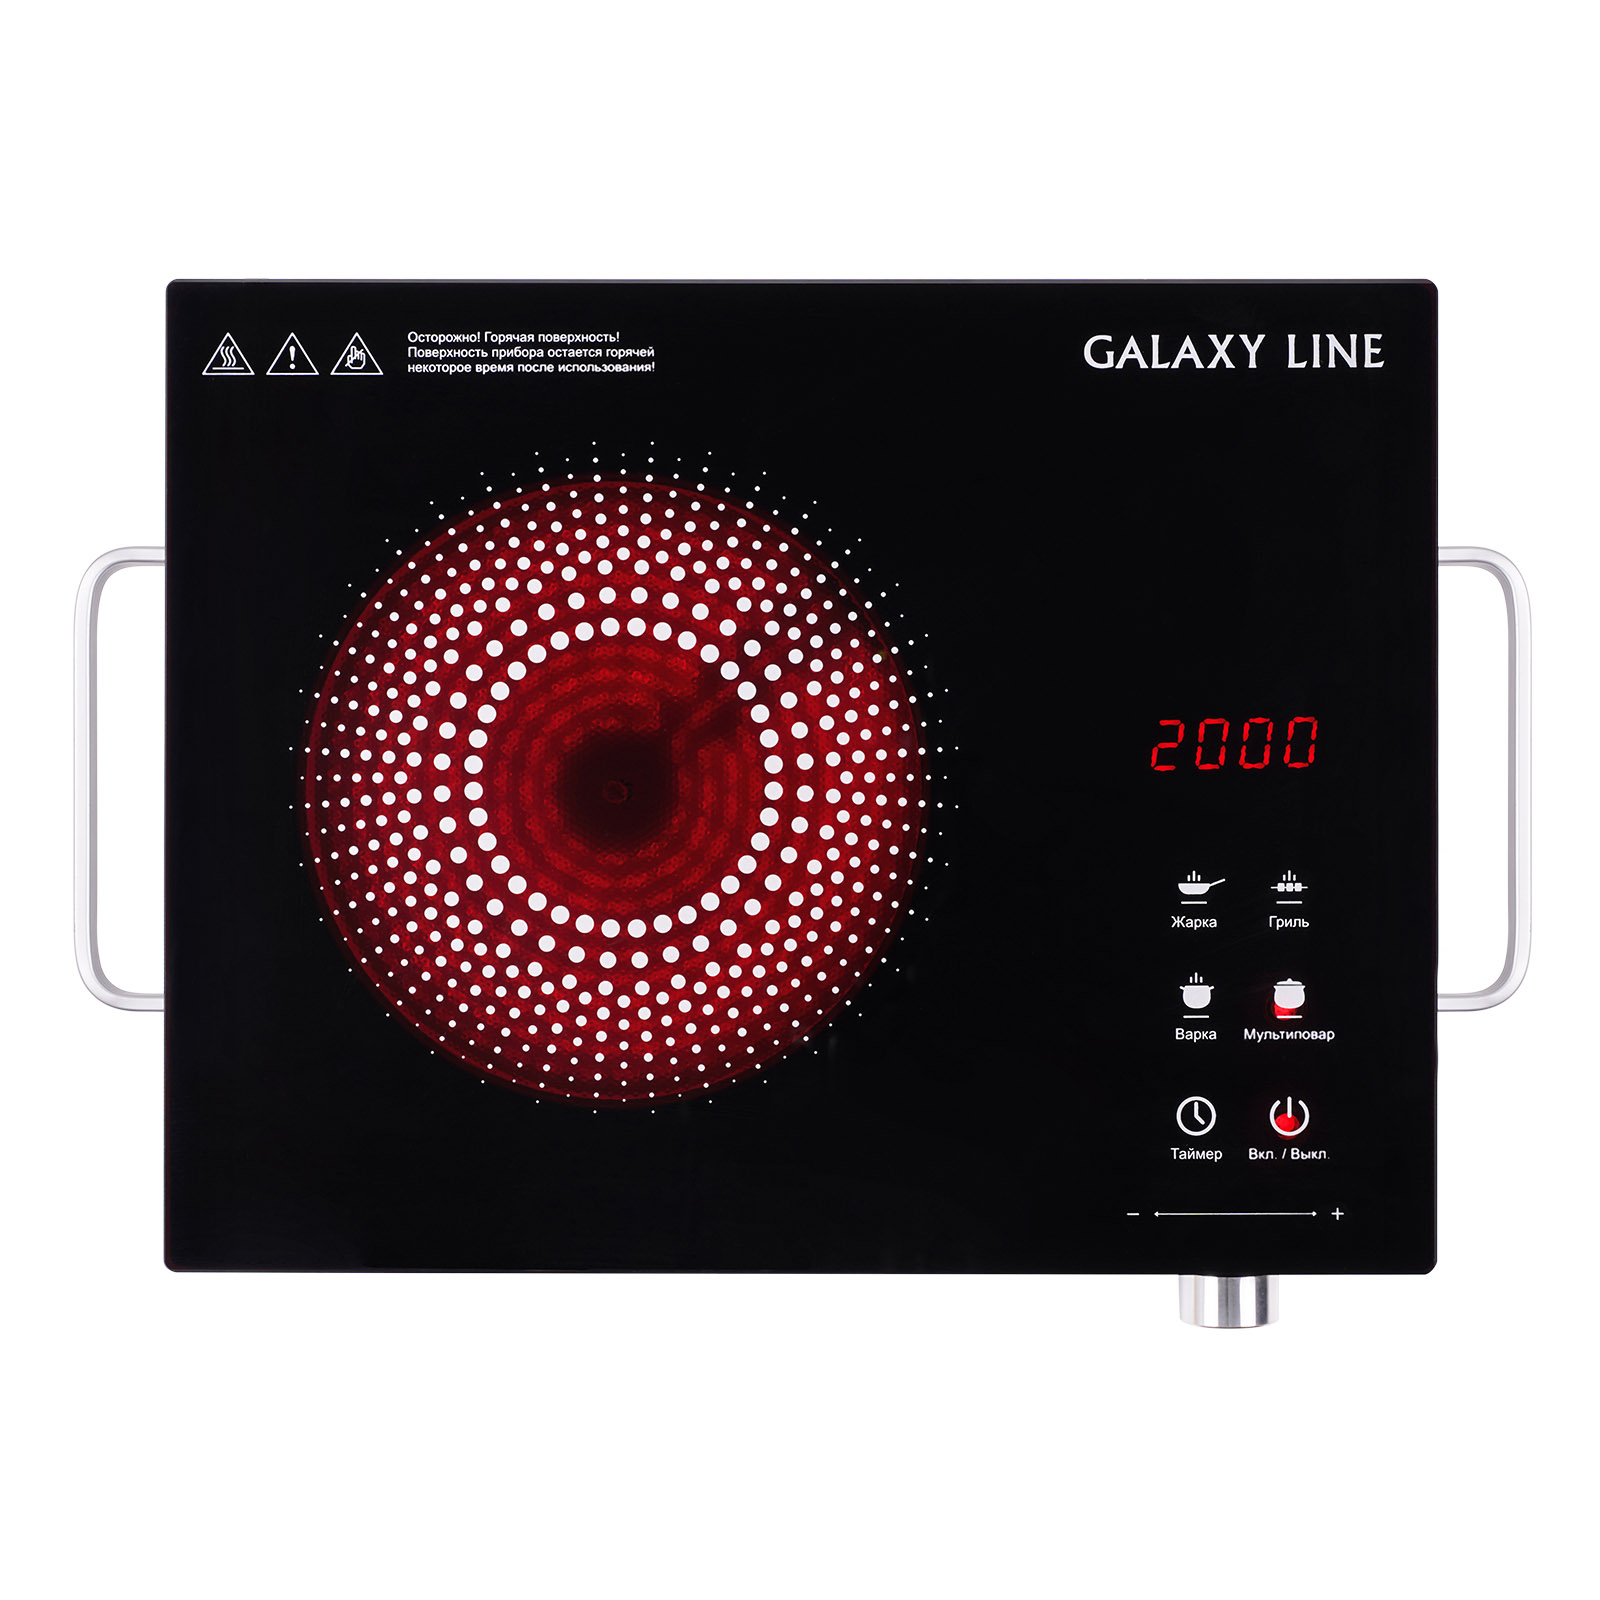 Плита компактная электрическая Galaxy LINE GL 3031, стеклокерамика, 2000Вт, конфорок - 1шт., серебристый/черный (гл3031л), цвет серебристый/черный